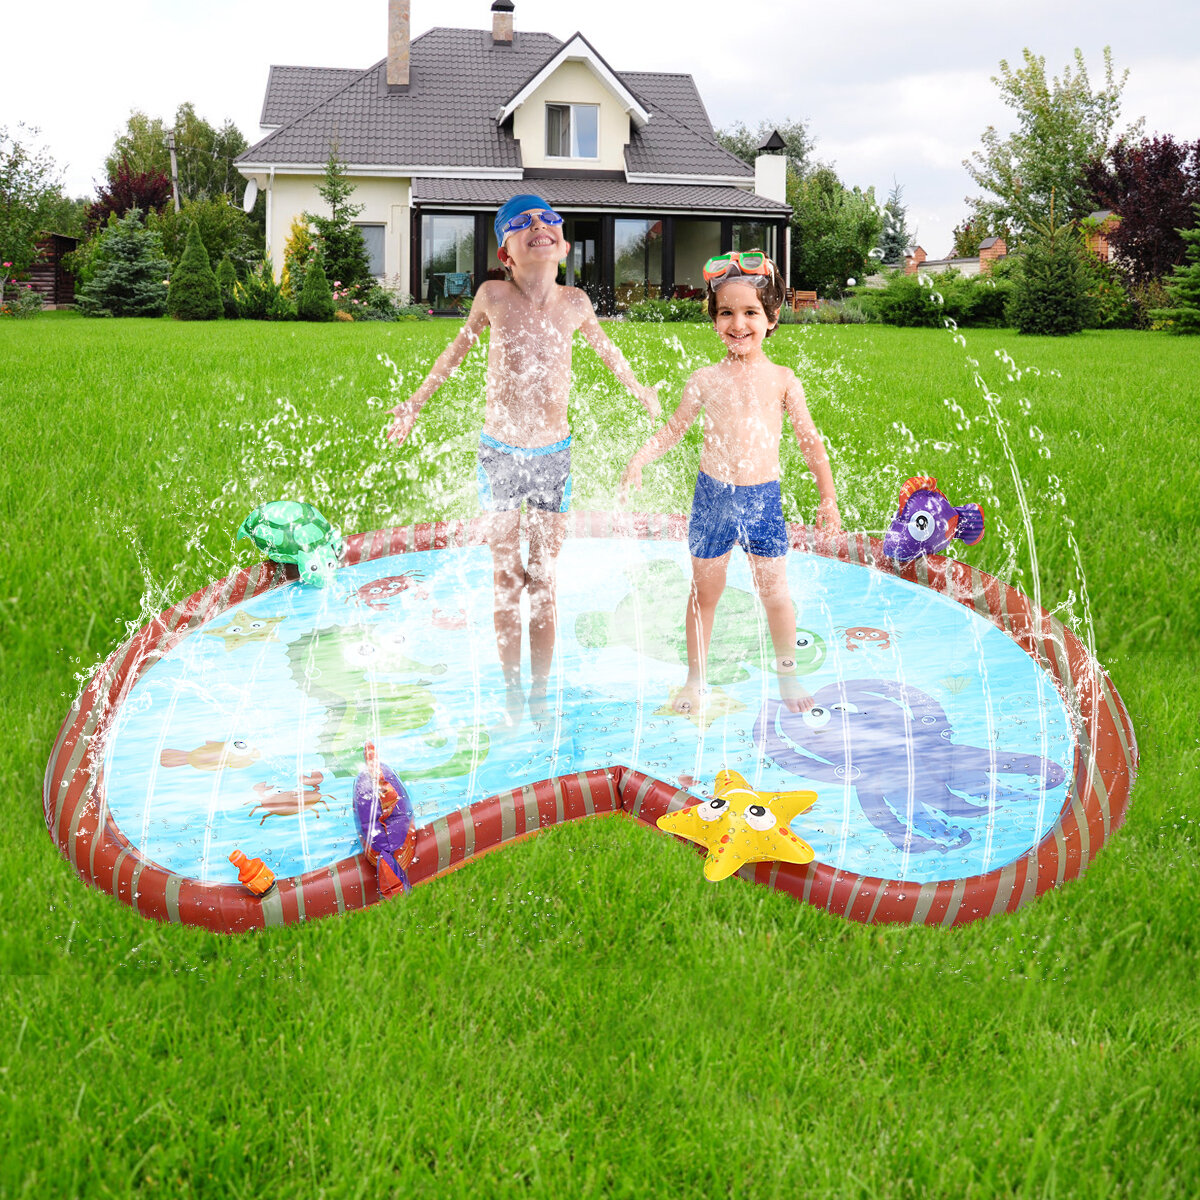 Kids Inflatable Water Splash Play Pool Lawn Sprinkler Mat Outdoor Backyard Waterproof Play Pad